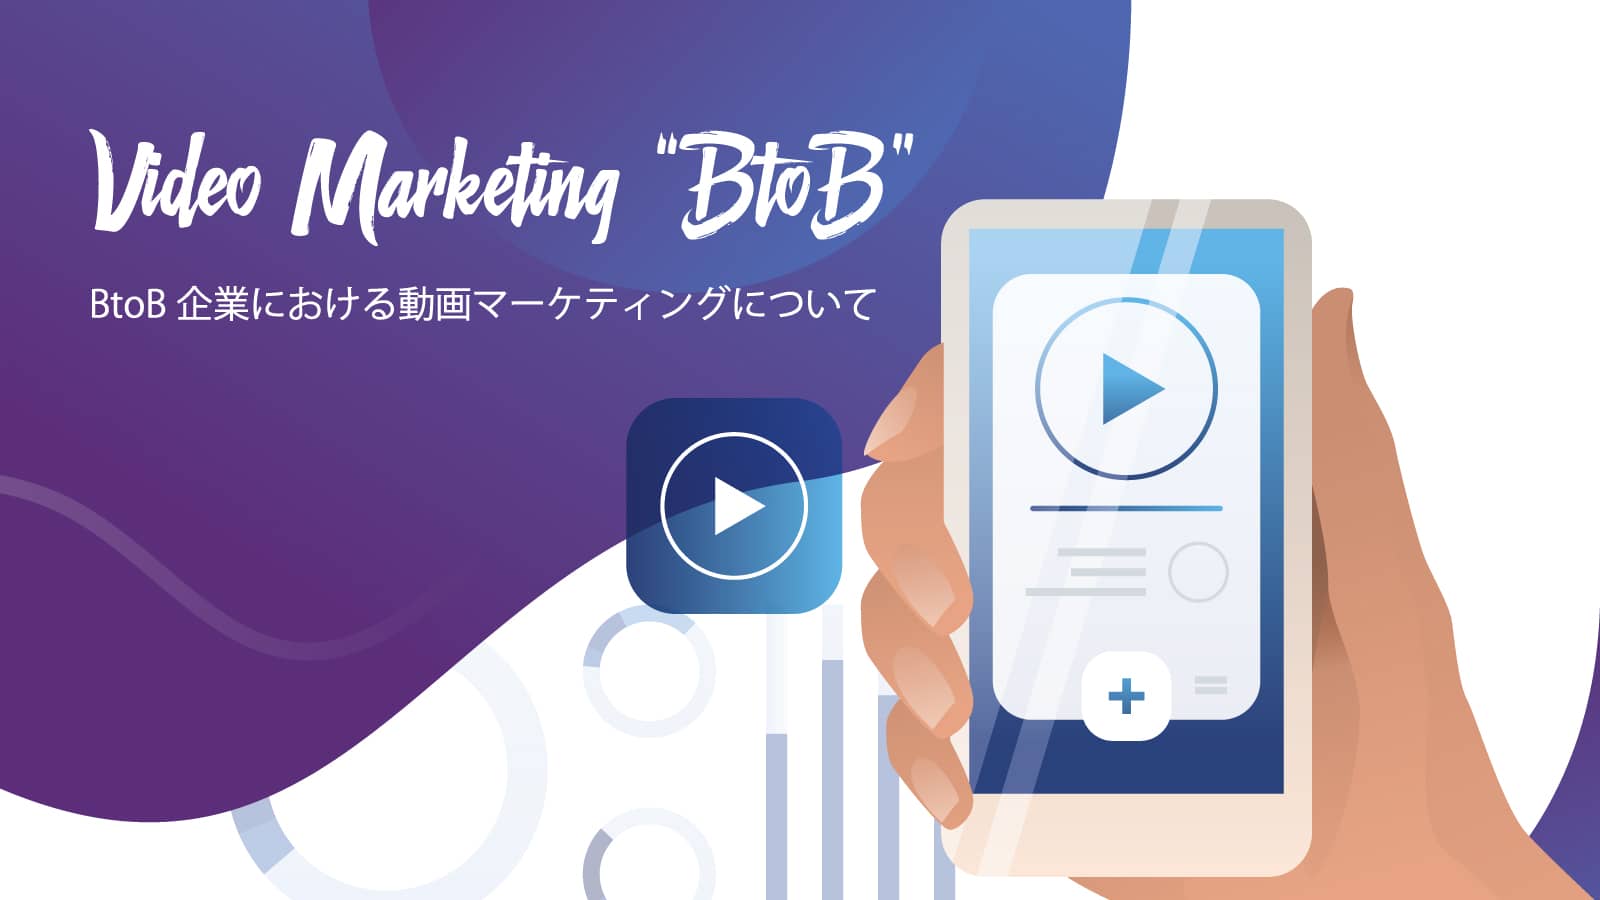 BtoB企業における動画マーケティングについて